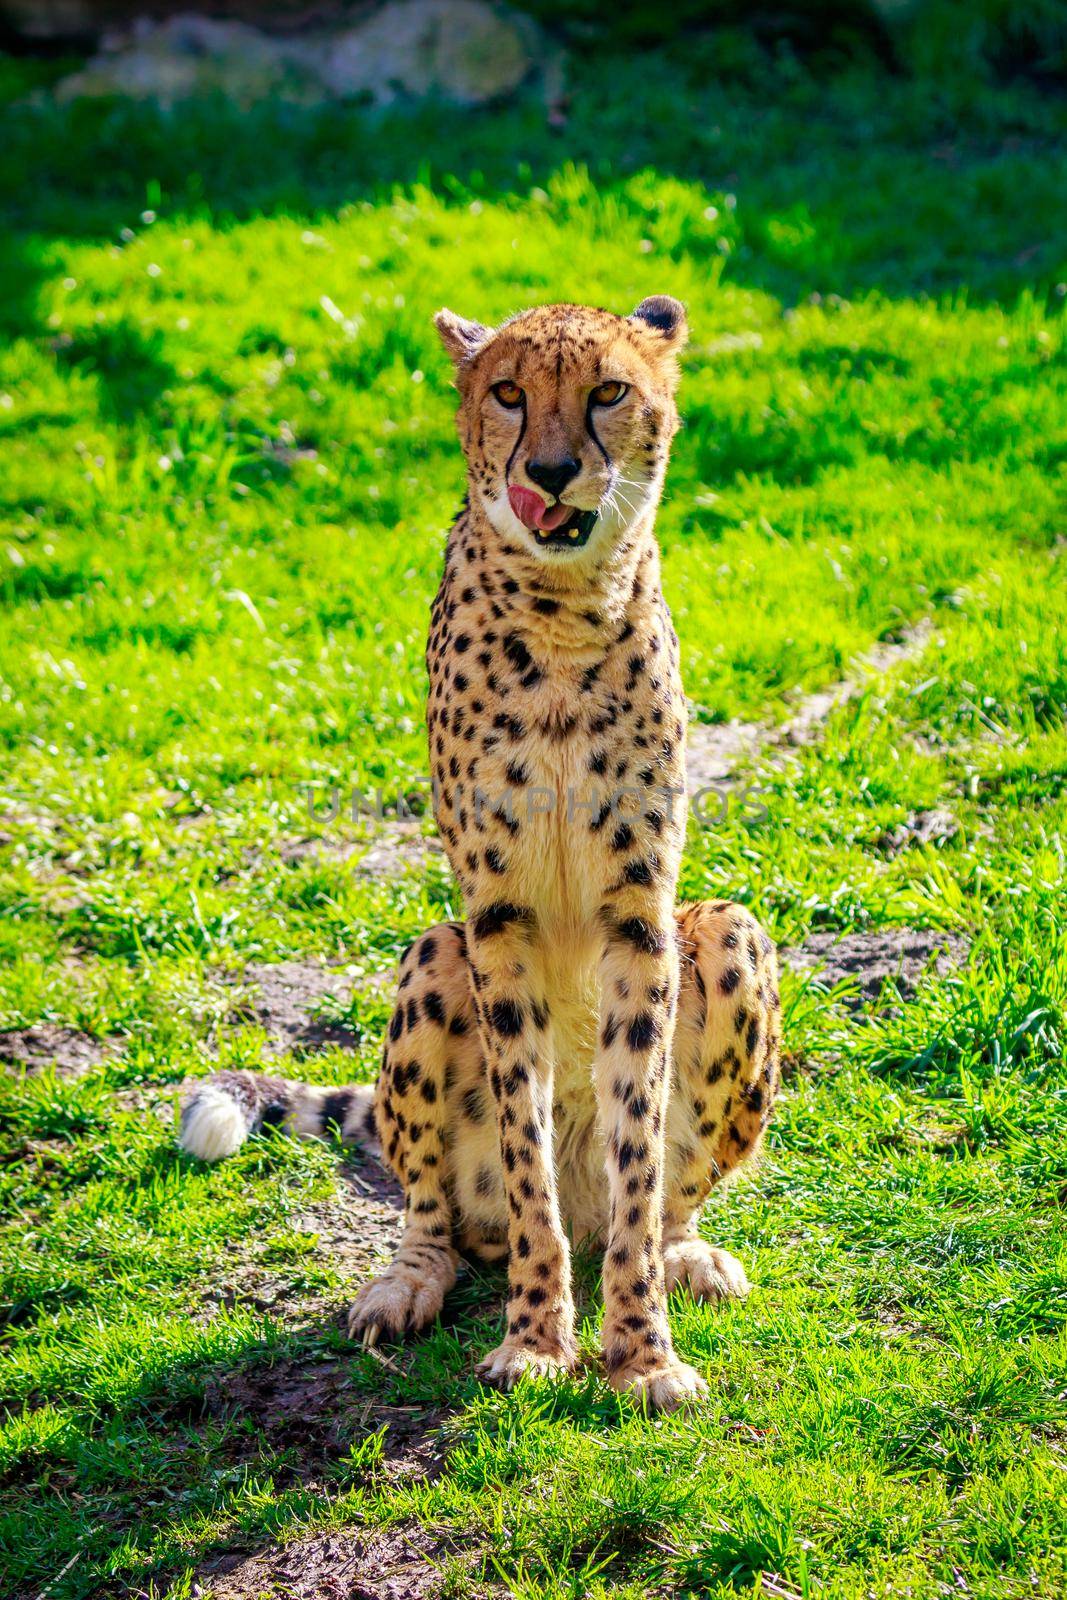 An Amur leopard sits on the grass.